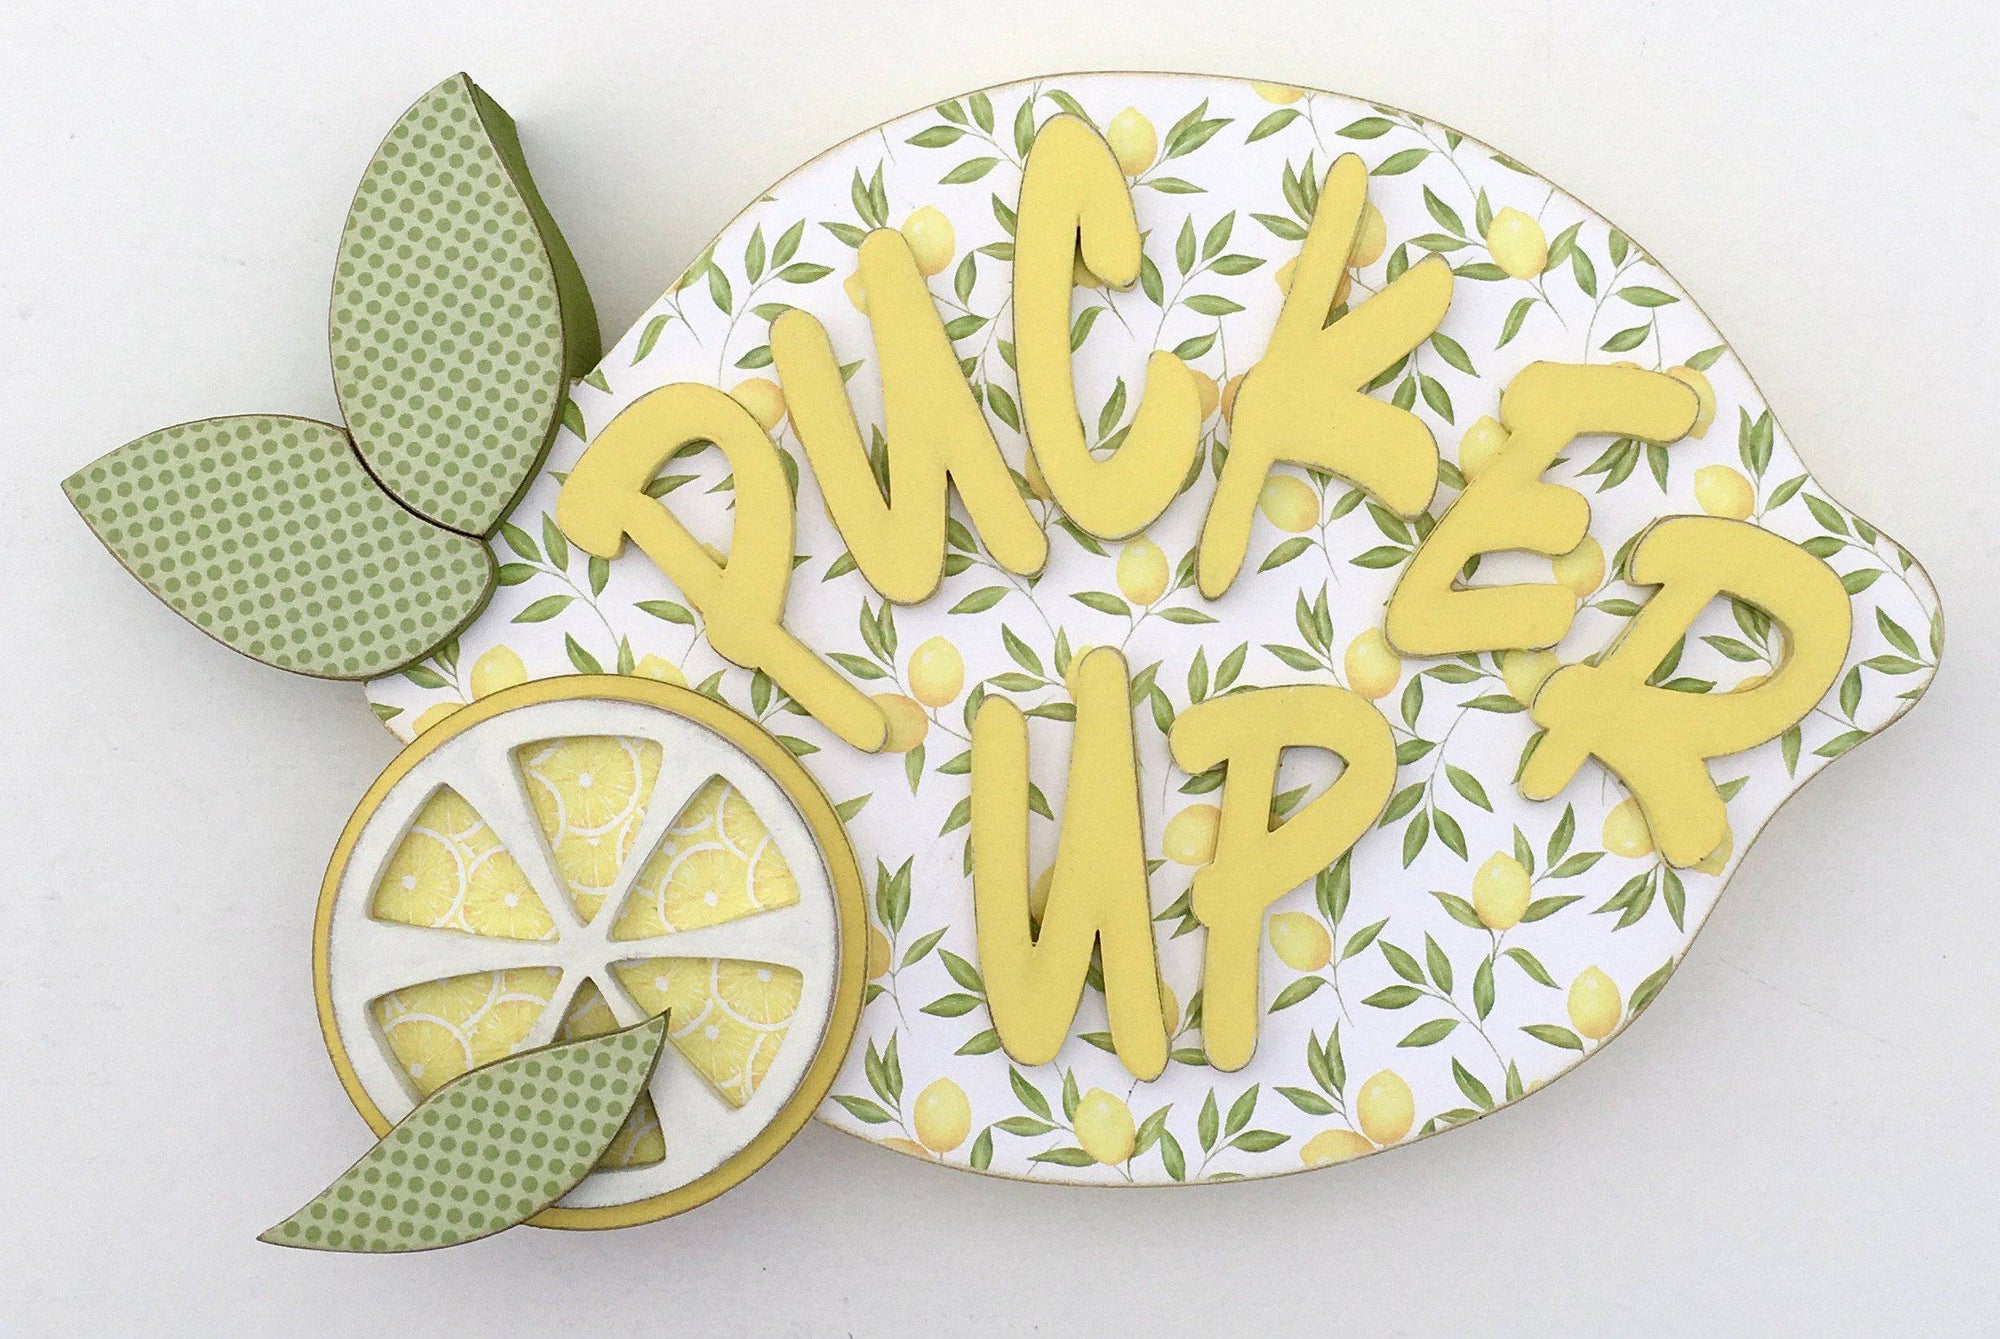 Pucker Up Lemon DIY Wood Craft Kit - Paisleys and Polka Dots